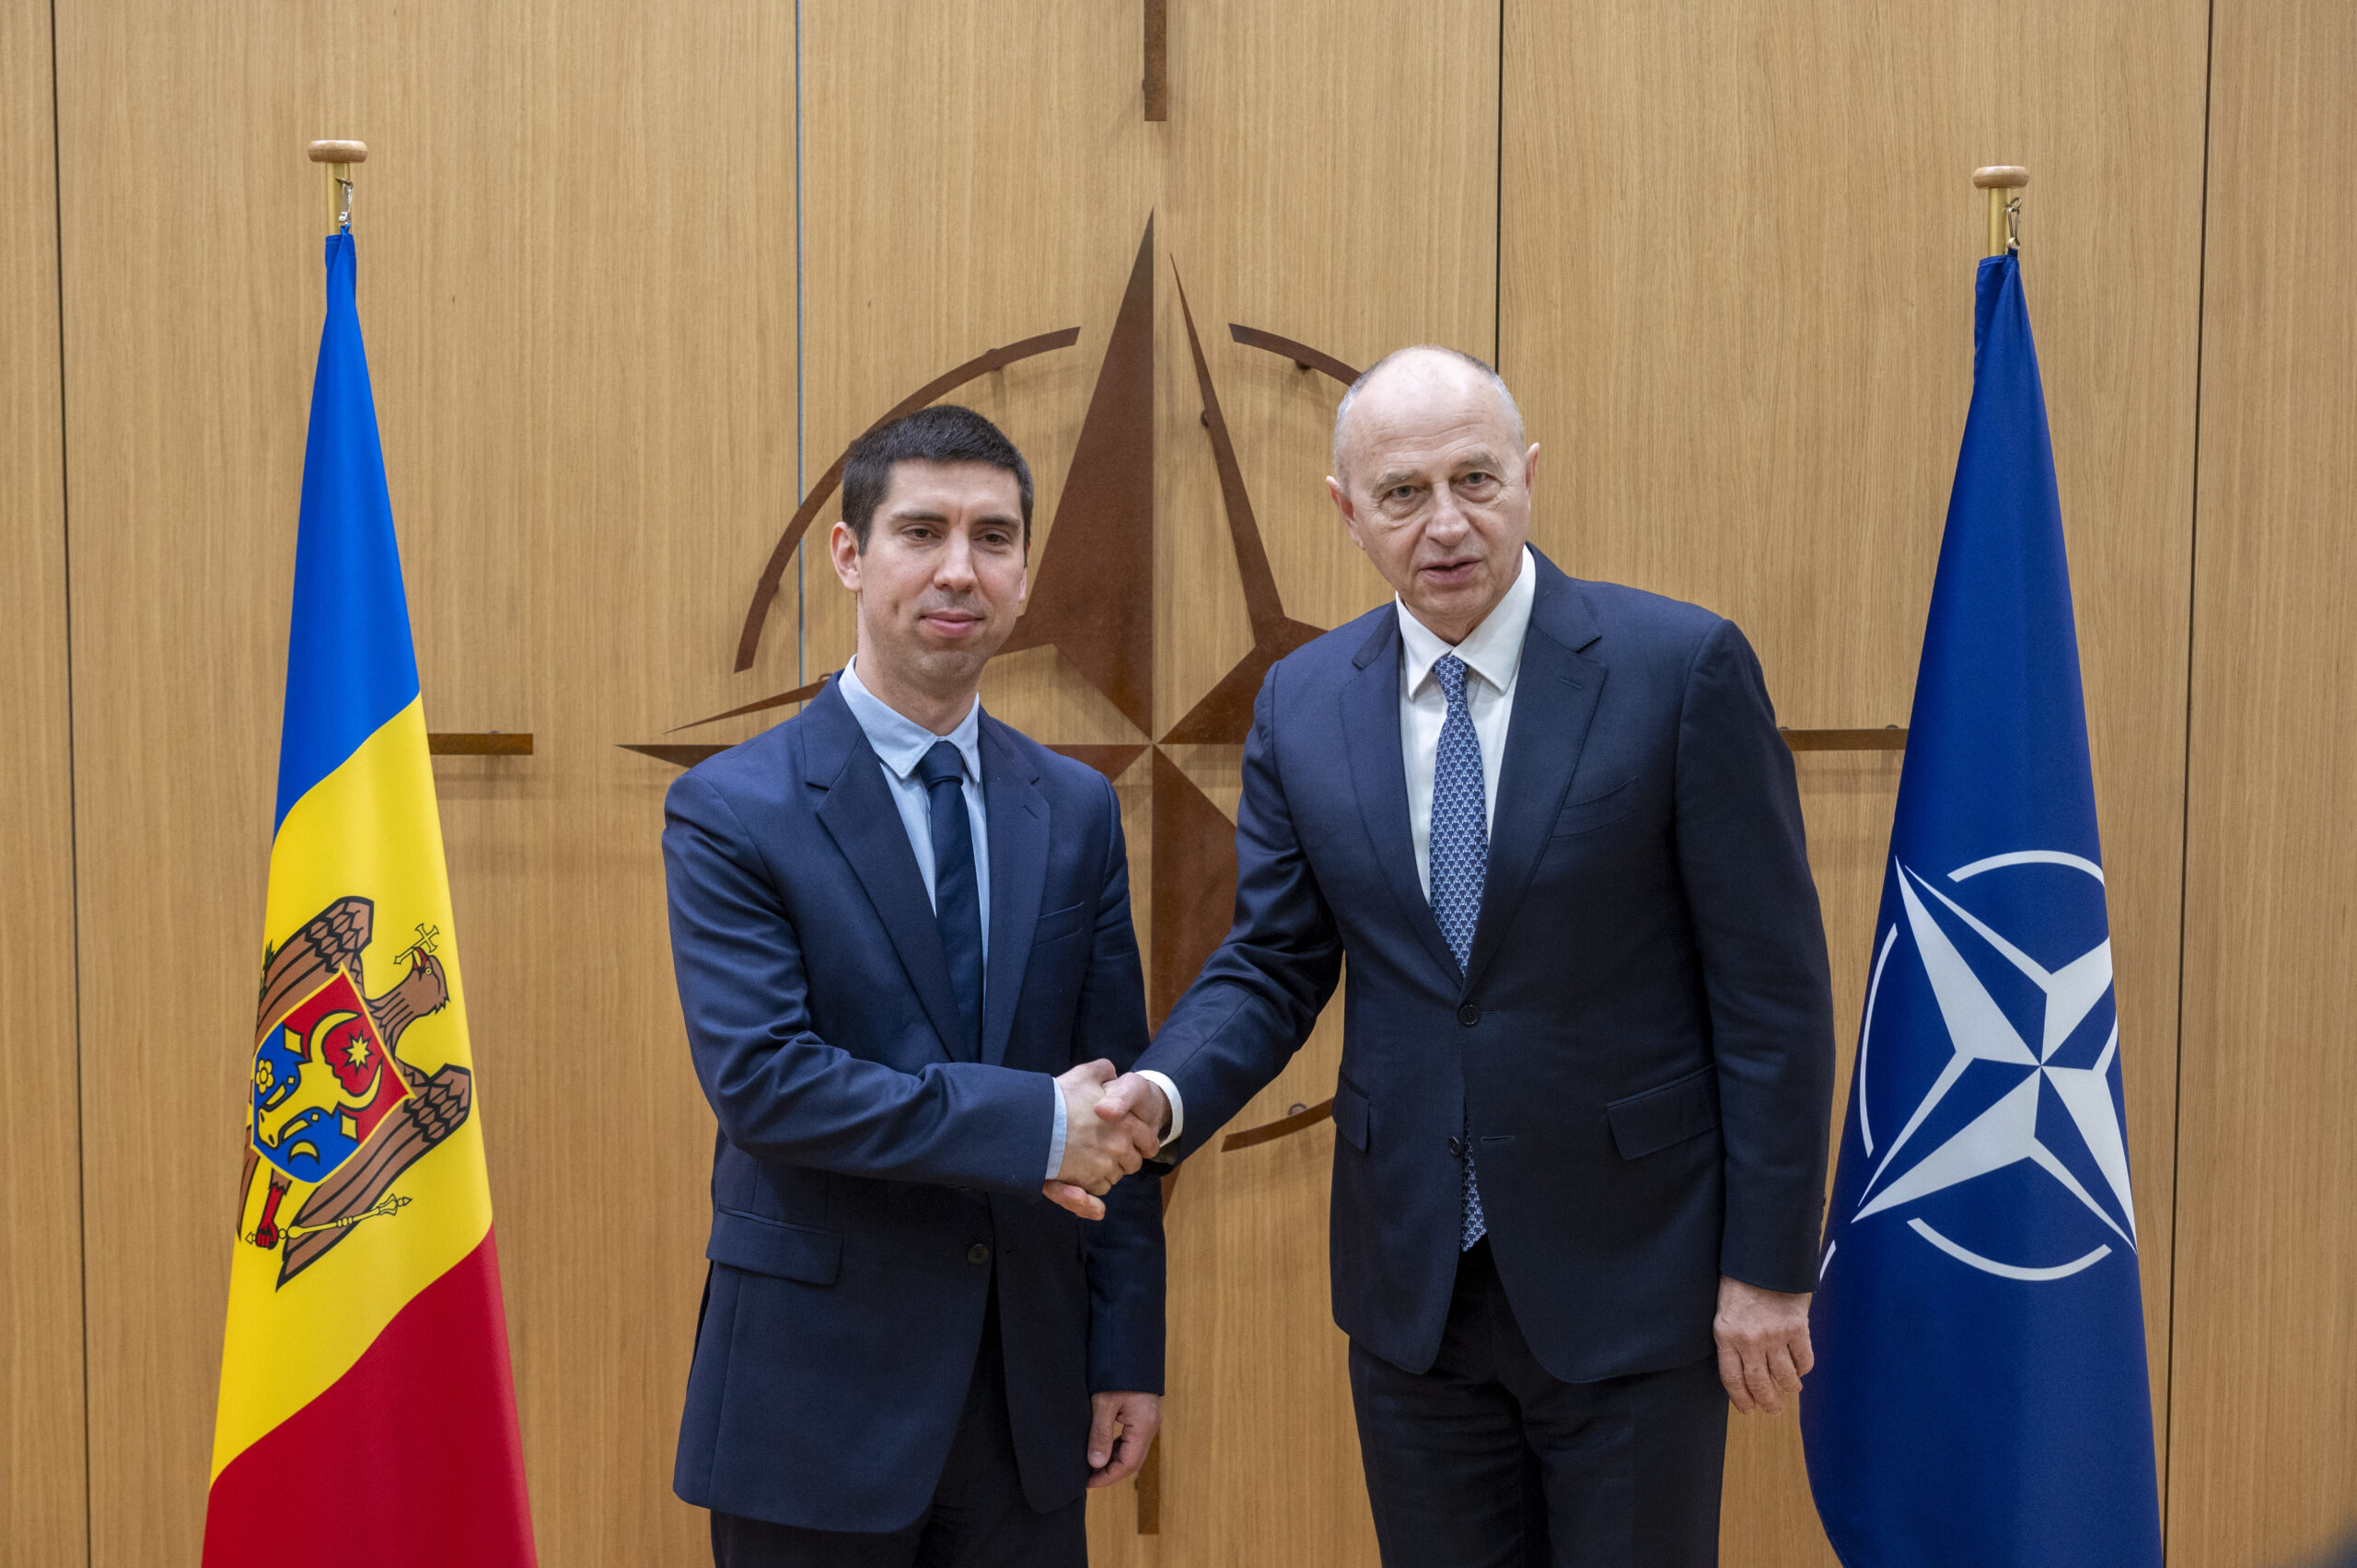 Popșoi, interesat ca NATO să ajute Moldova în sectorul de securitate și apărare. Discuție la Bruxelles cu Geoană